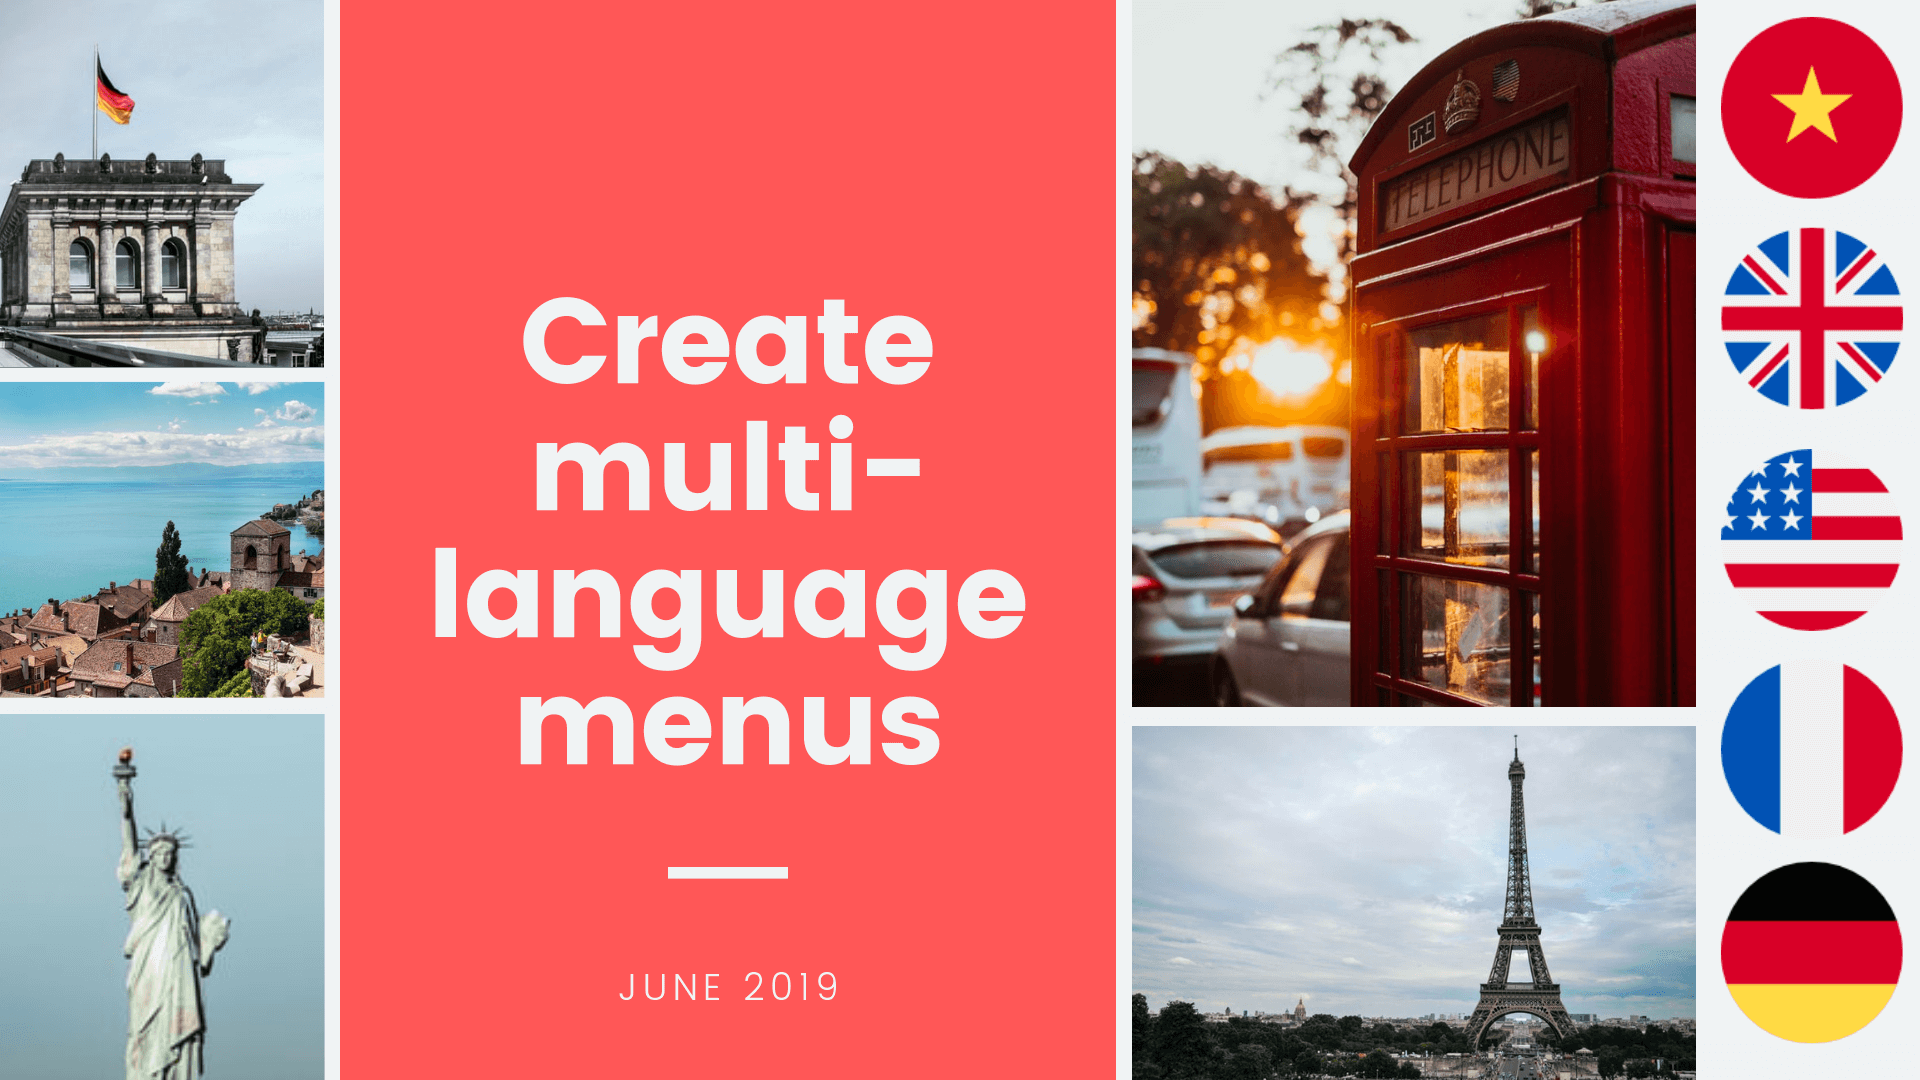 How to create multi-language menus with Ninja Menus